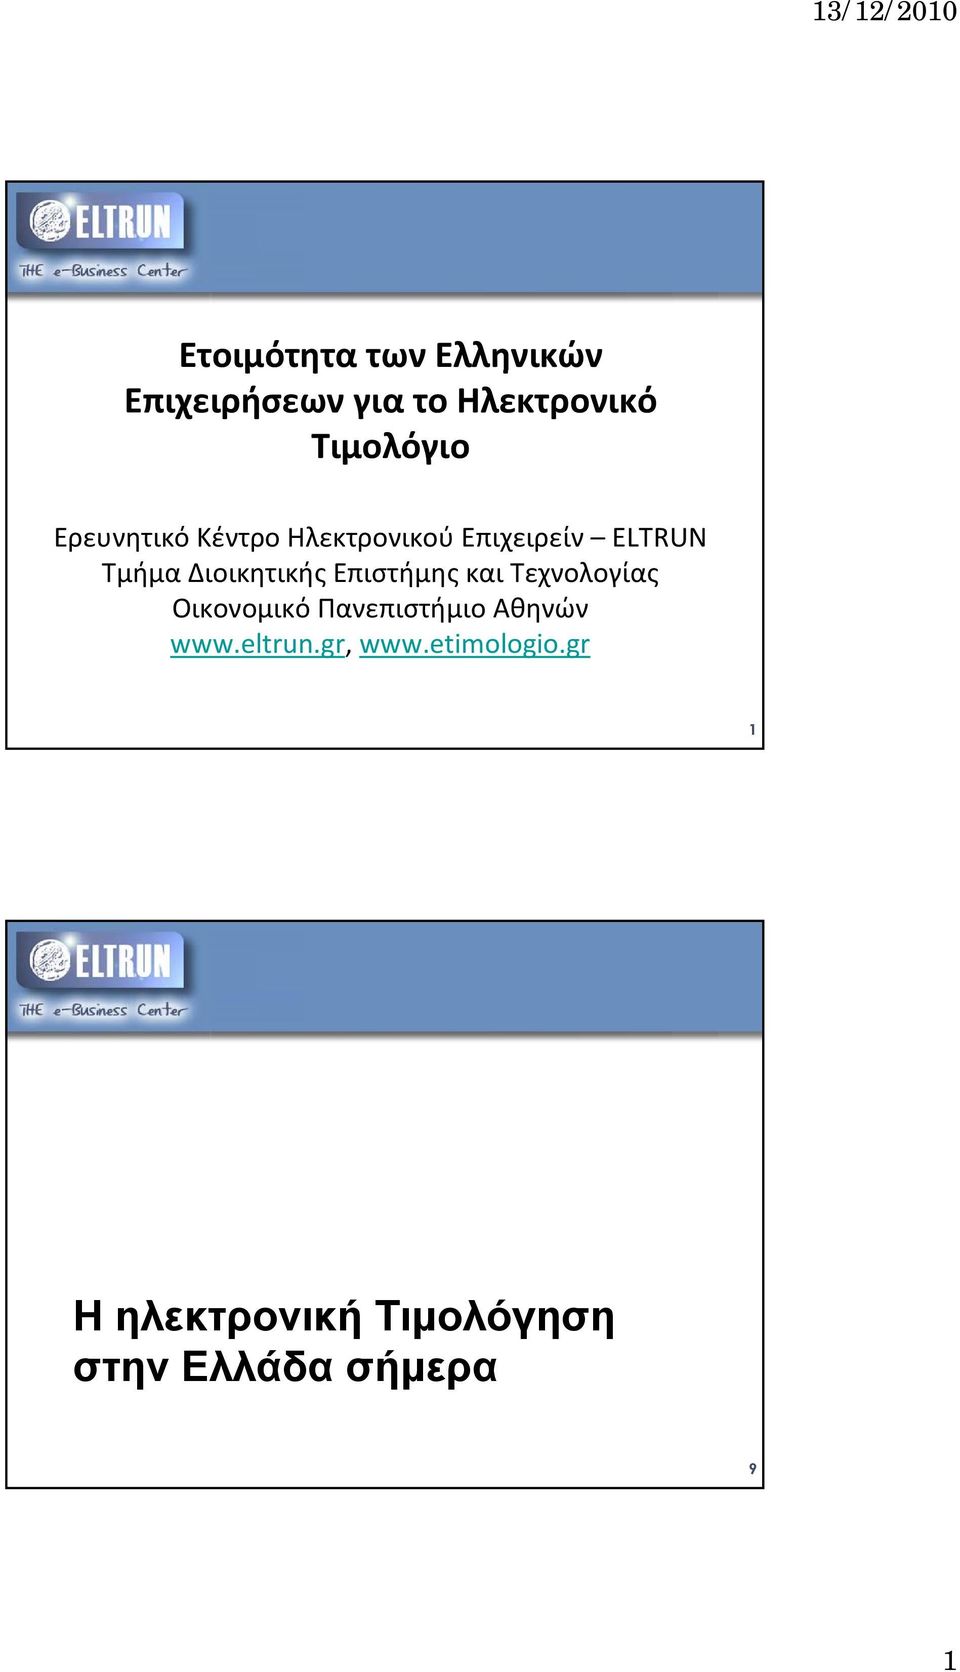 Επιστήμης και Τεχνολογίας Οικονομικό Πανεπιστήμιο Αθηνών www.eltrun.